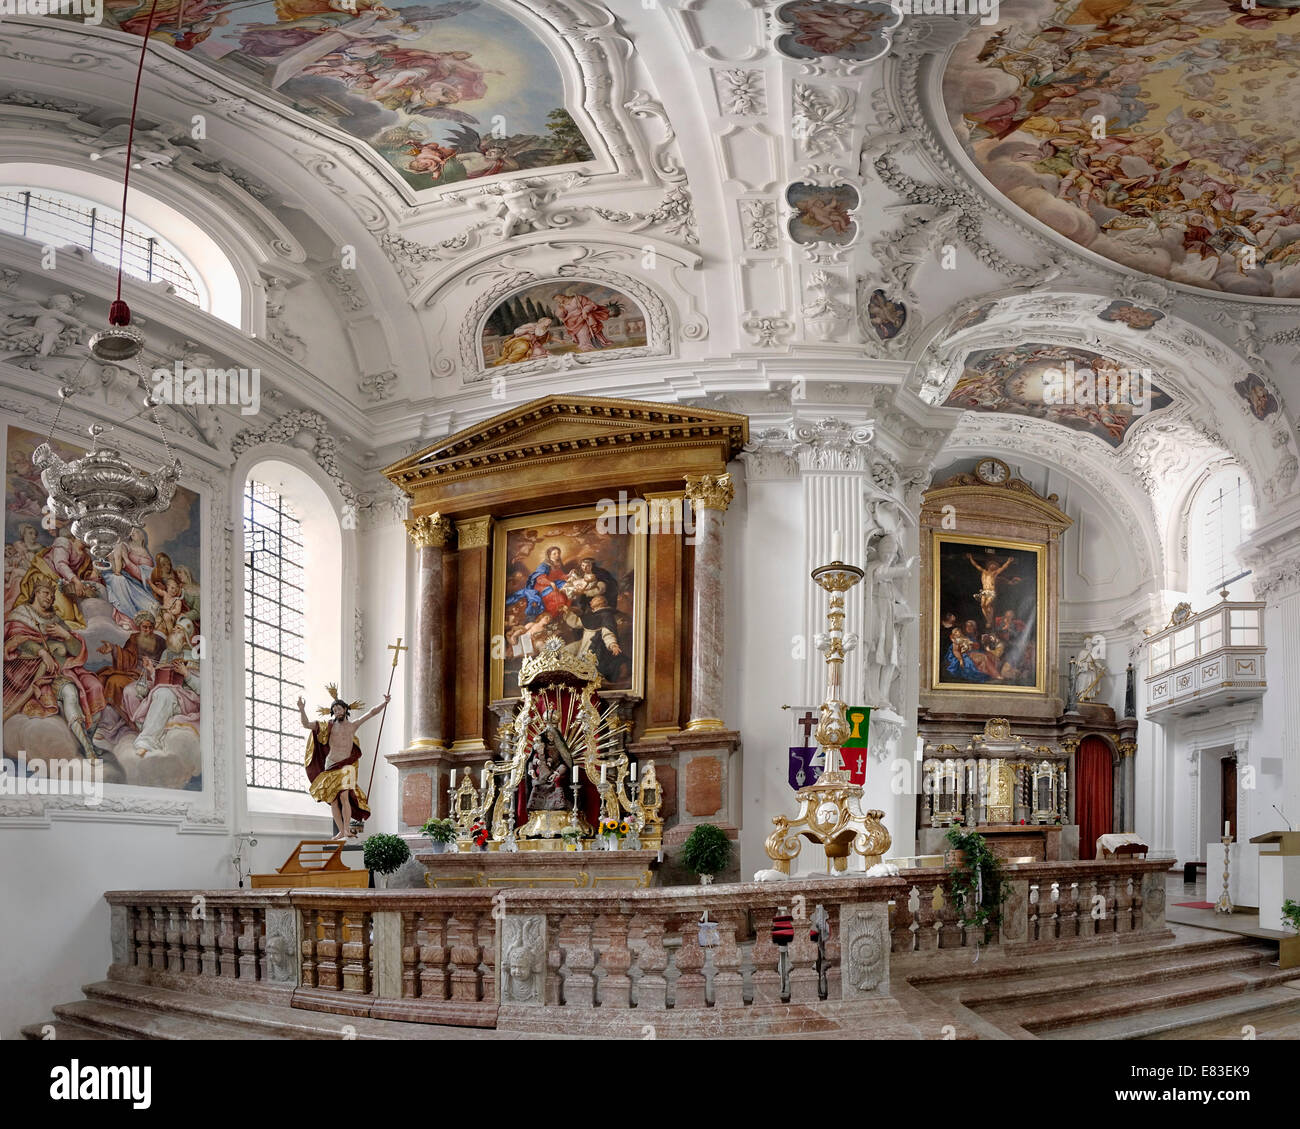 DE - Bayern: Innenraum der Pfarrkirche St. Quirinus in Tegernsee (zuvor ein Benediktinerkloster) Stockfoto